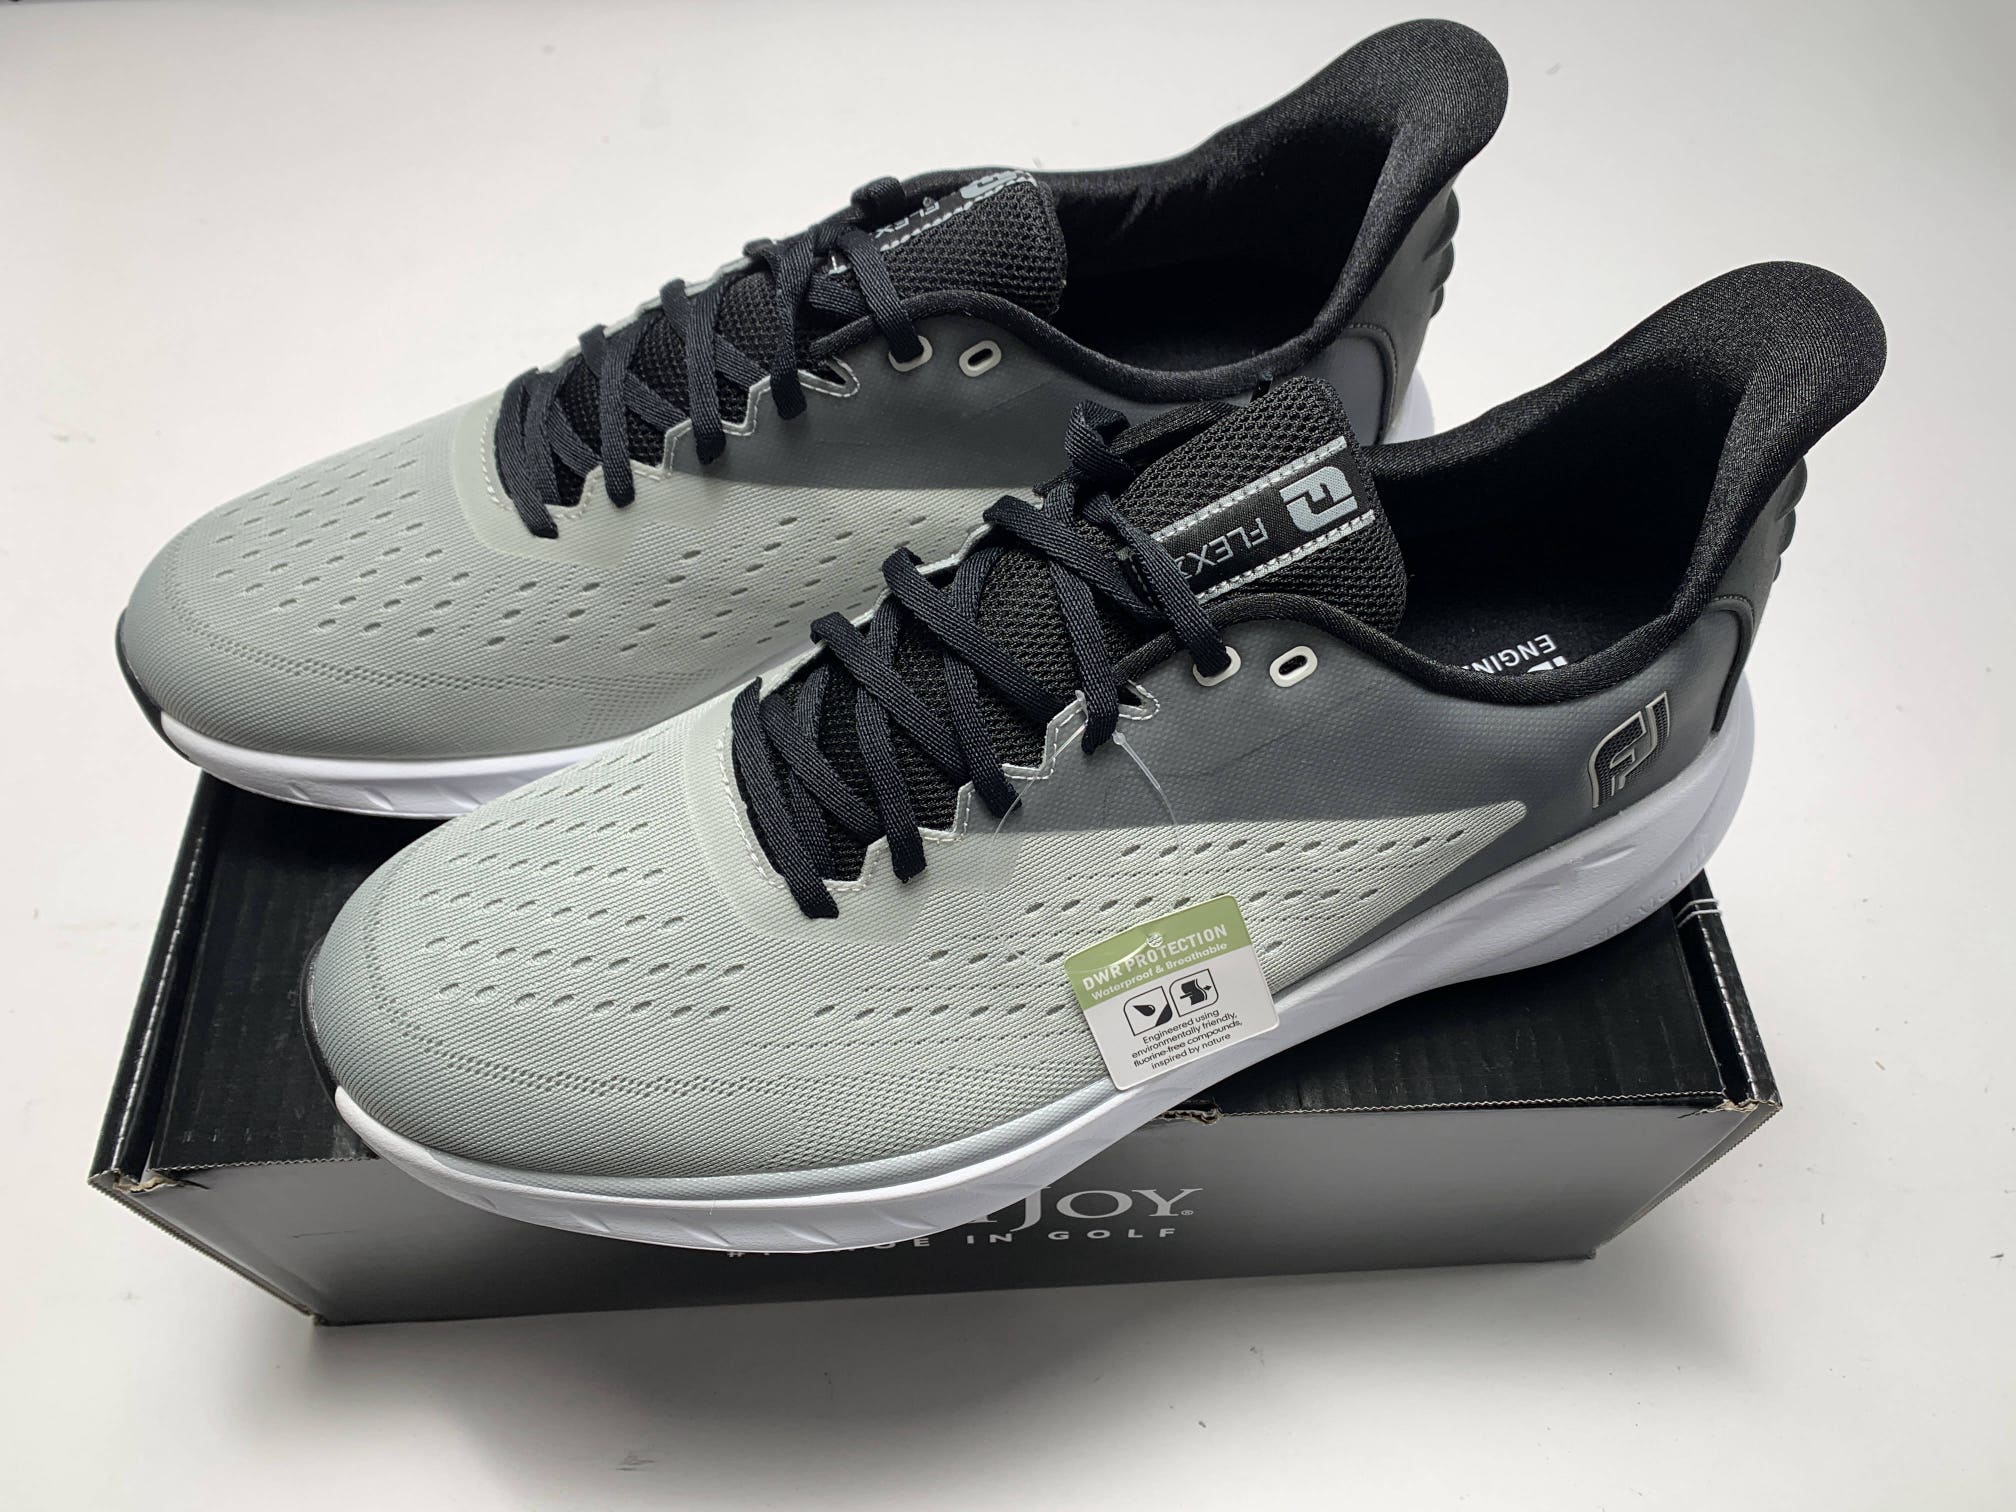 FootJoy FJ Flex XP Golf Shoes Gray Black White Men's SZ 13 (56281)